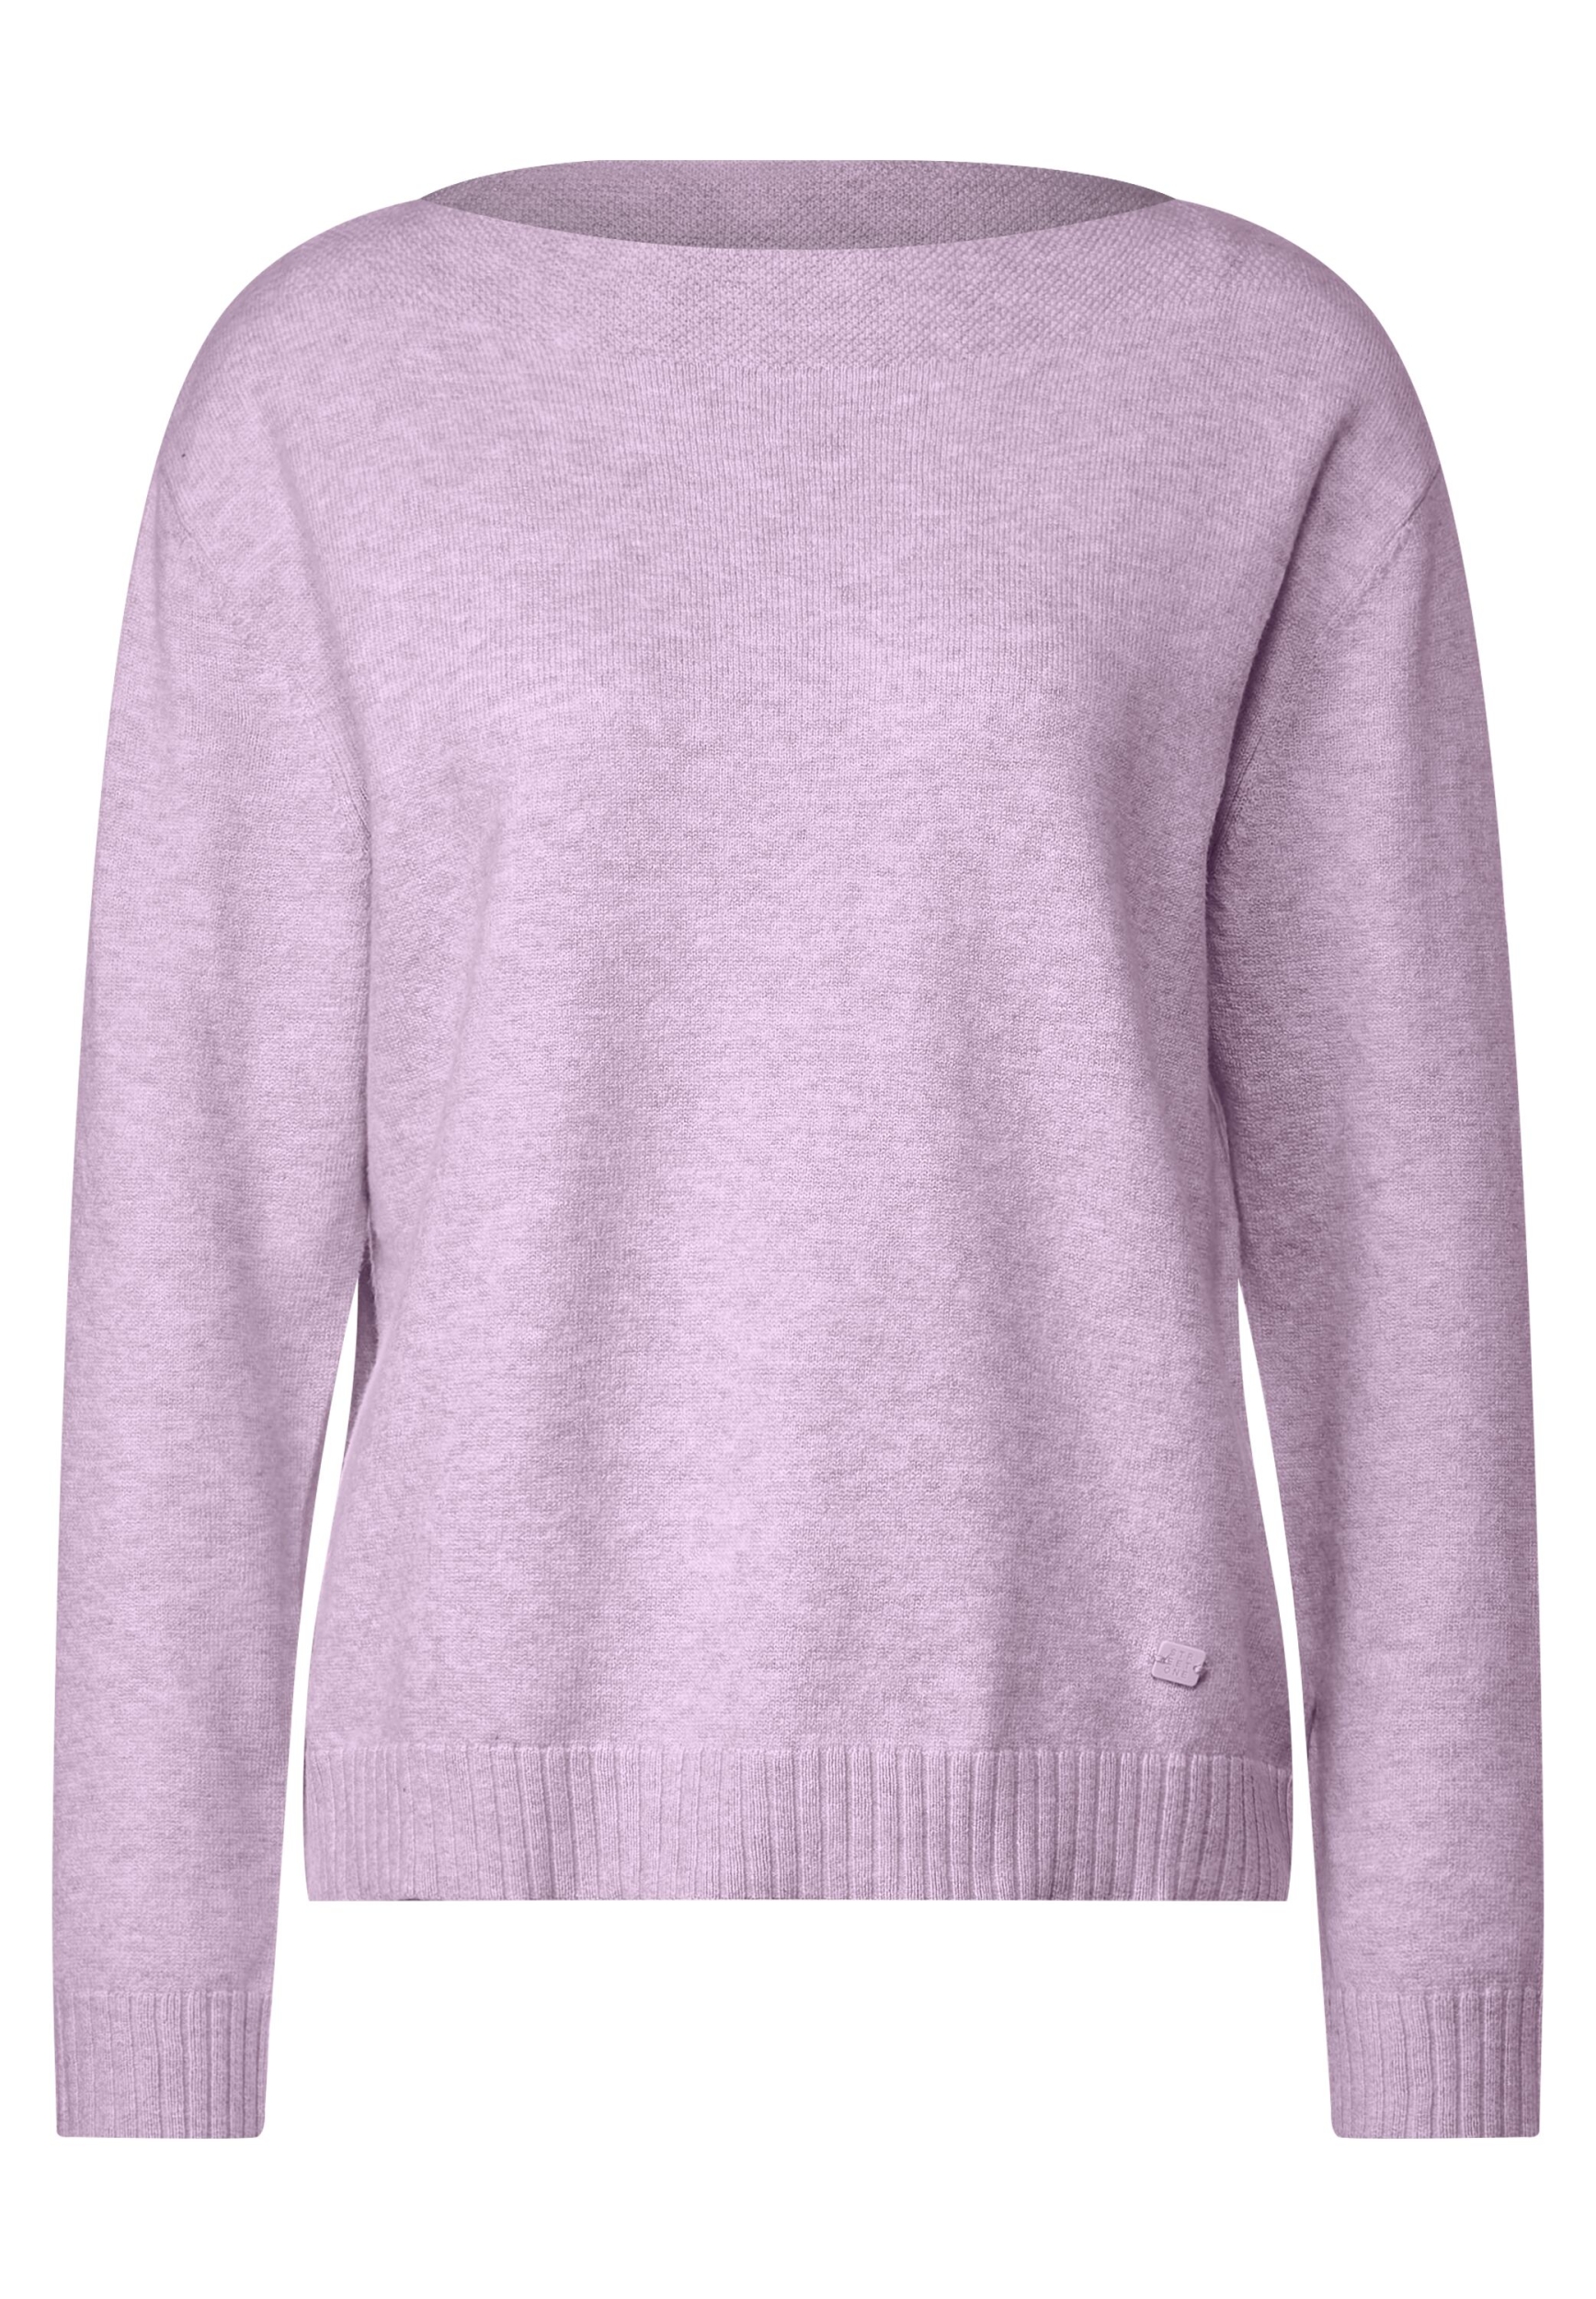 sweater u-boat pure 40 | A302414-15290-40 QR | | melange LTD soft lilac